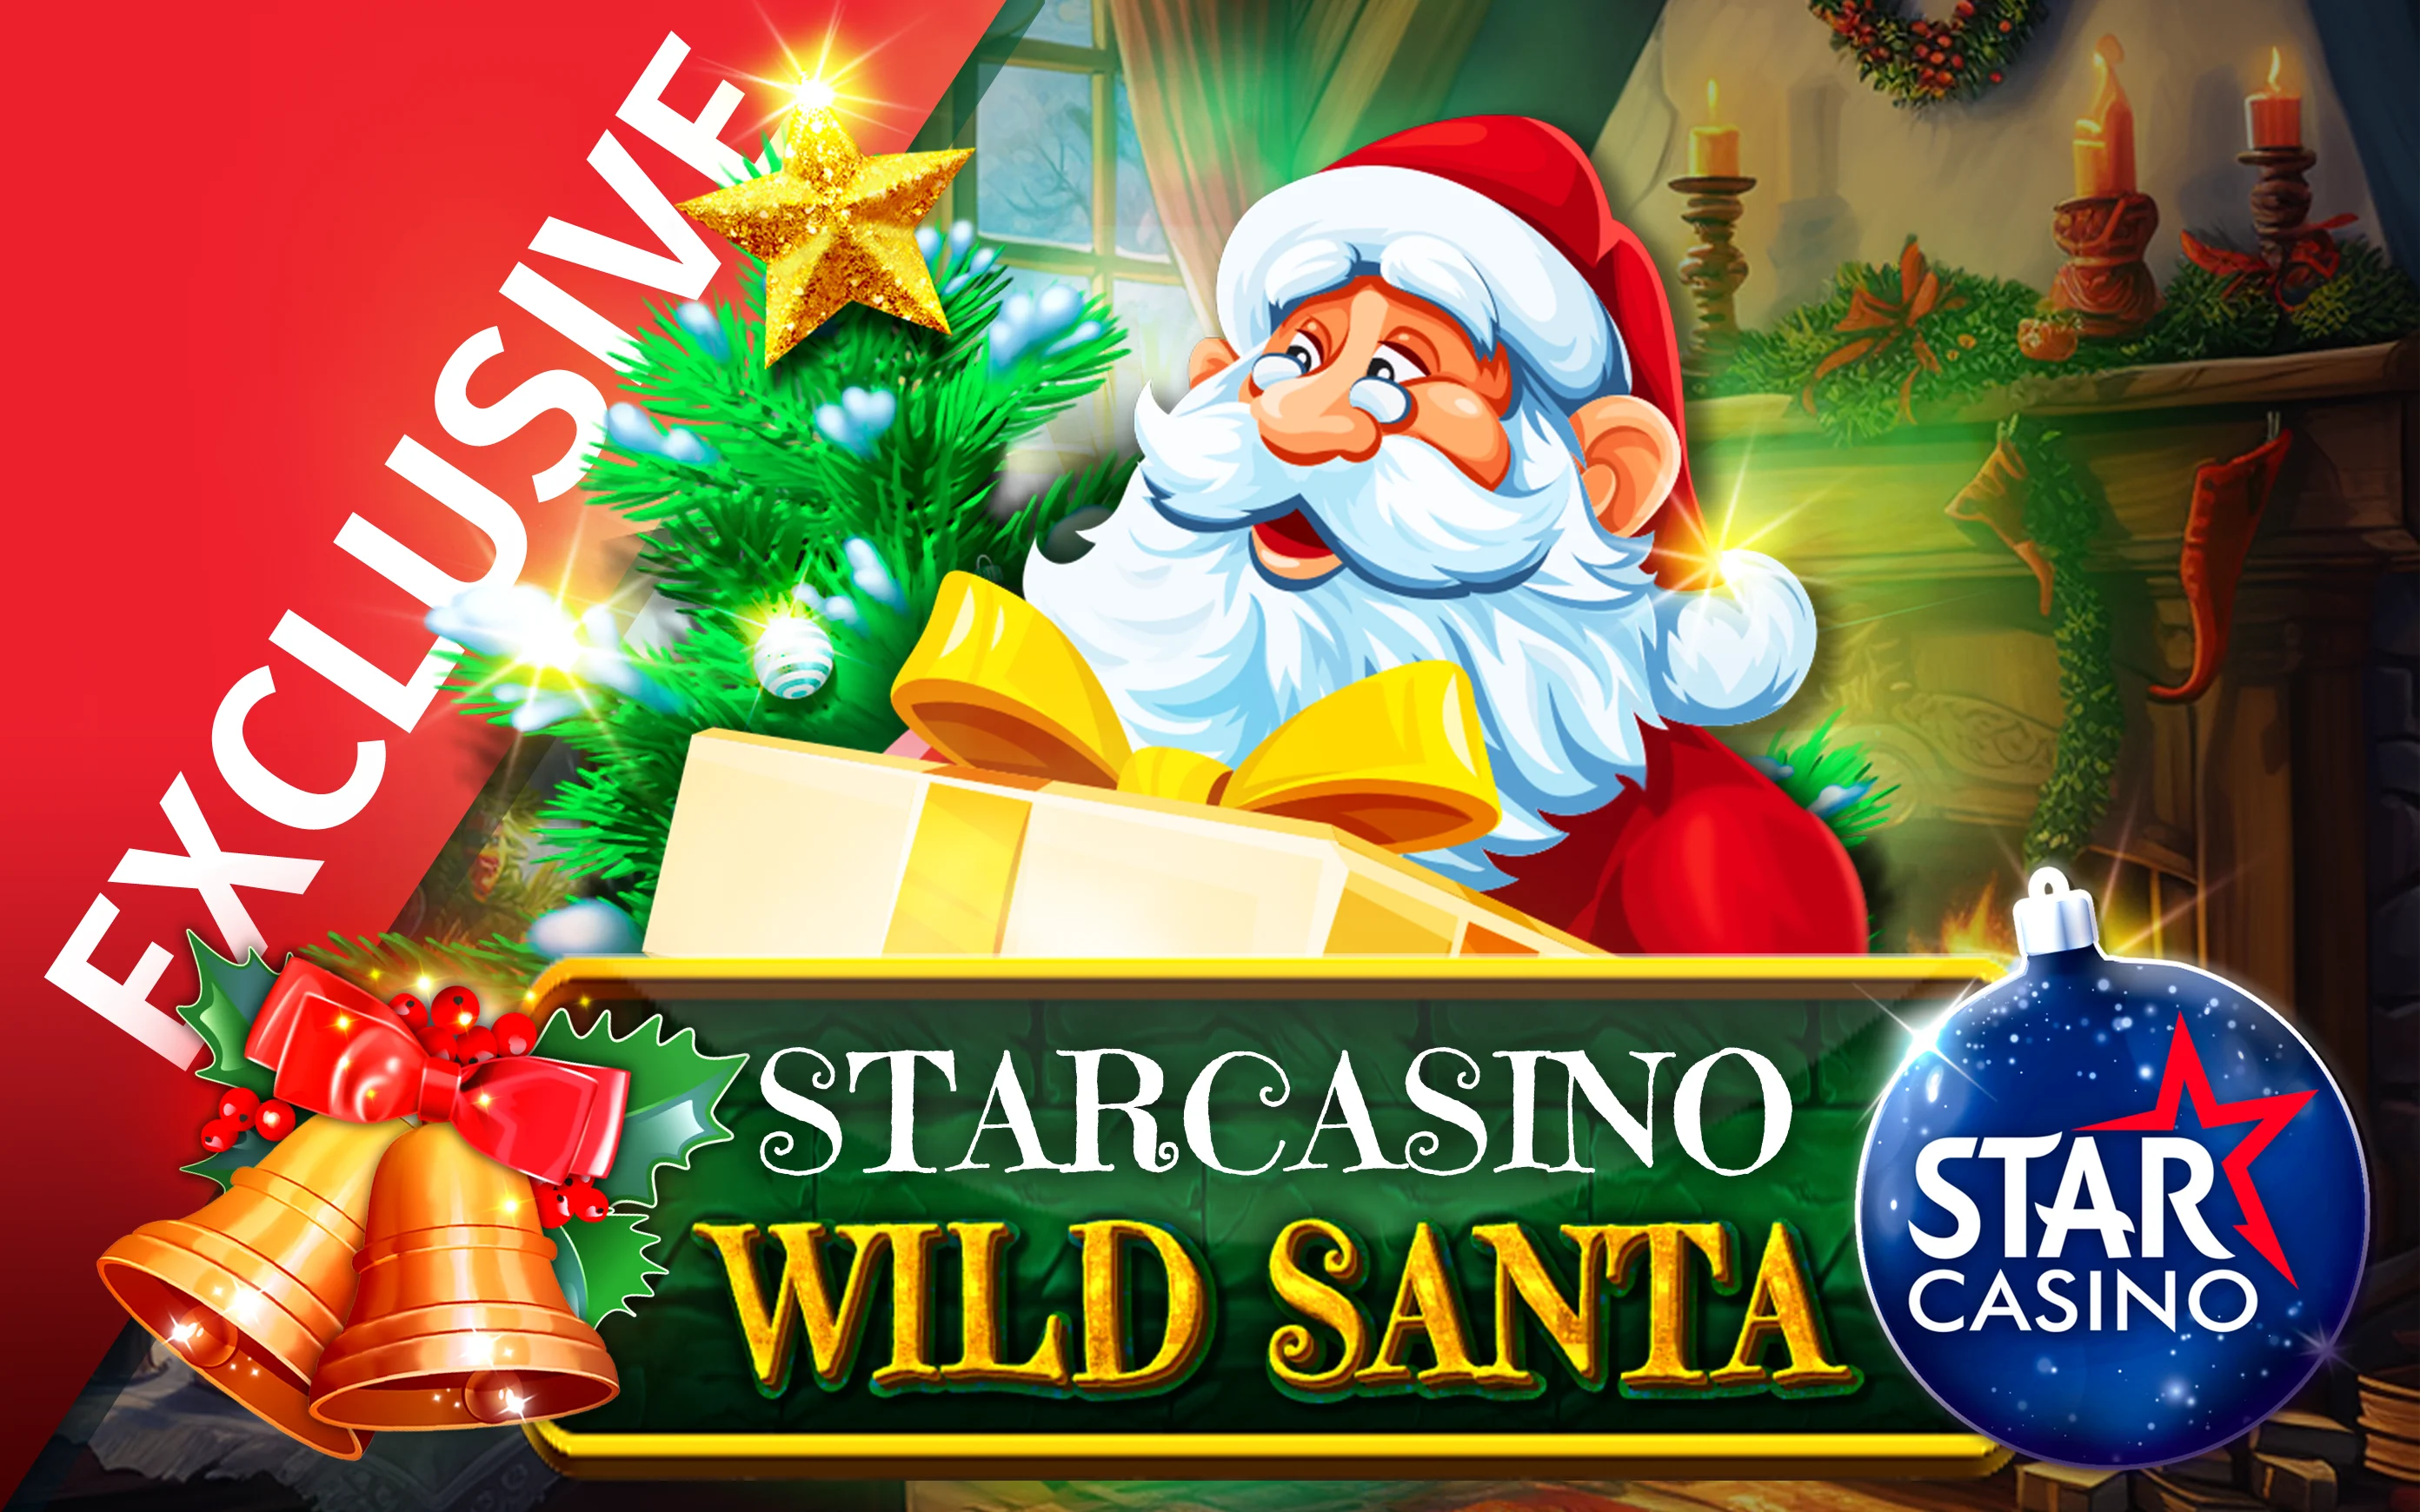 Juega a Starcasino Wild Santa 2 en el casino en línea de Starcasino.be